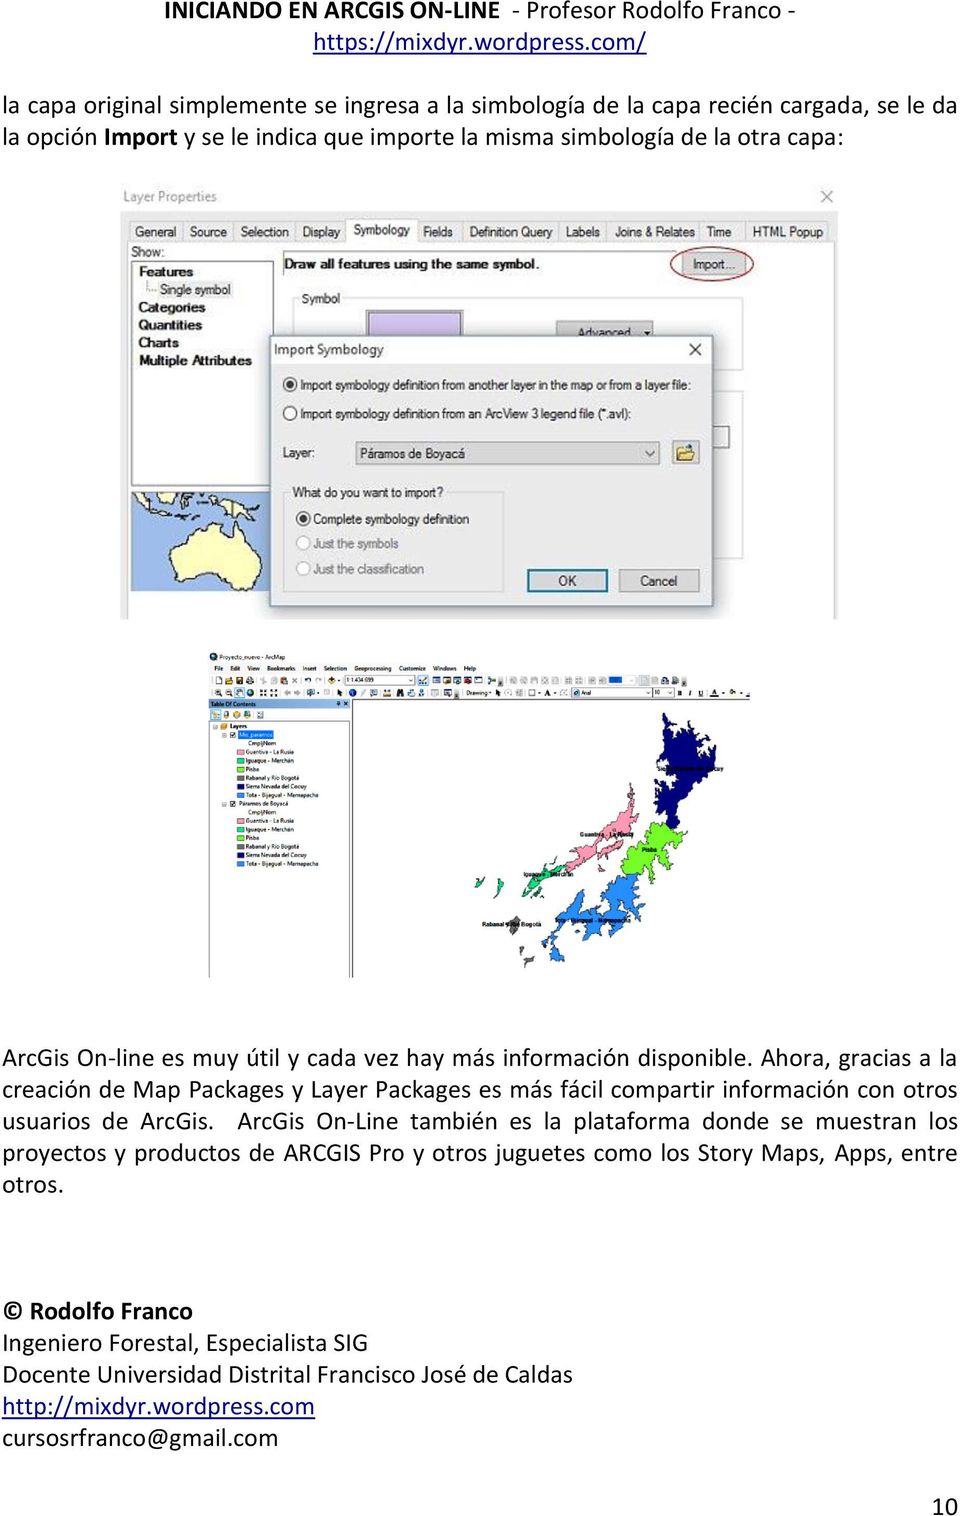 Ahora, gracias a la creación de Map Packages y Layer Packages es más fácil compartir información con otros usuarios de ArcGis.